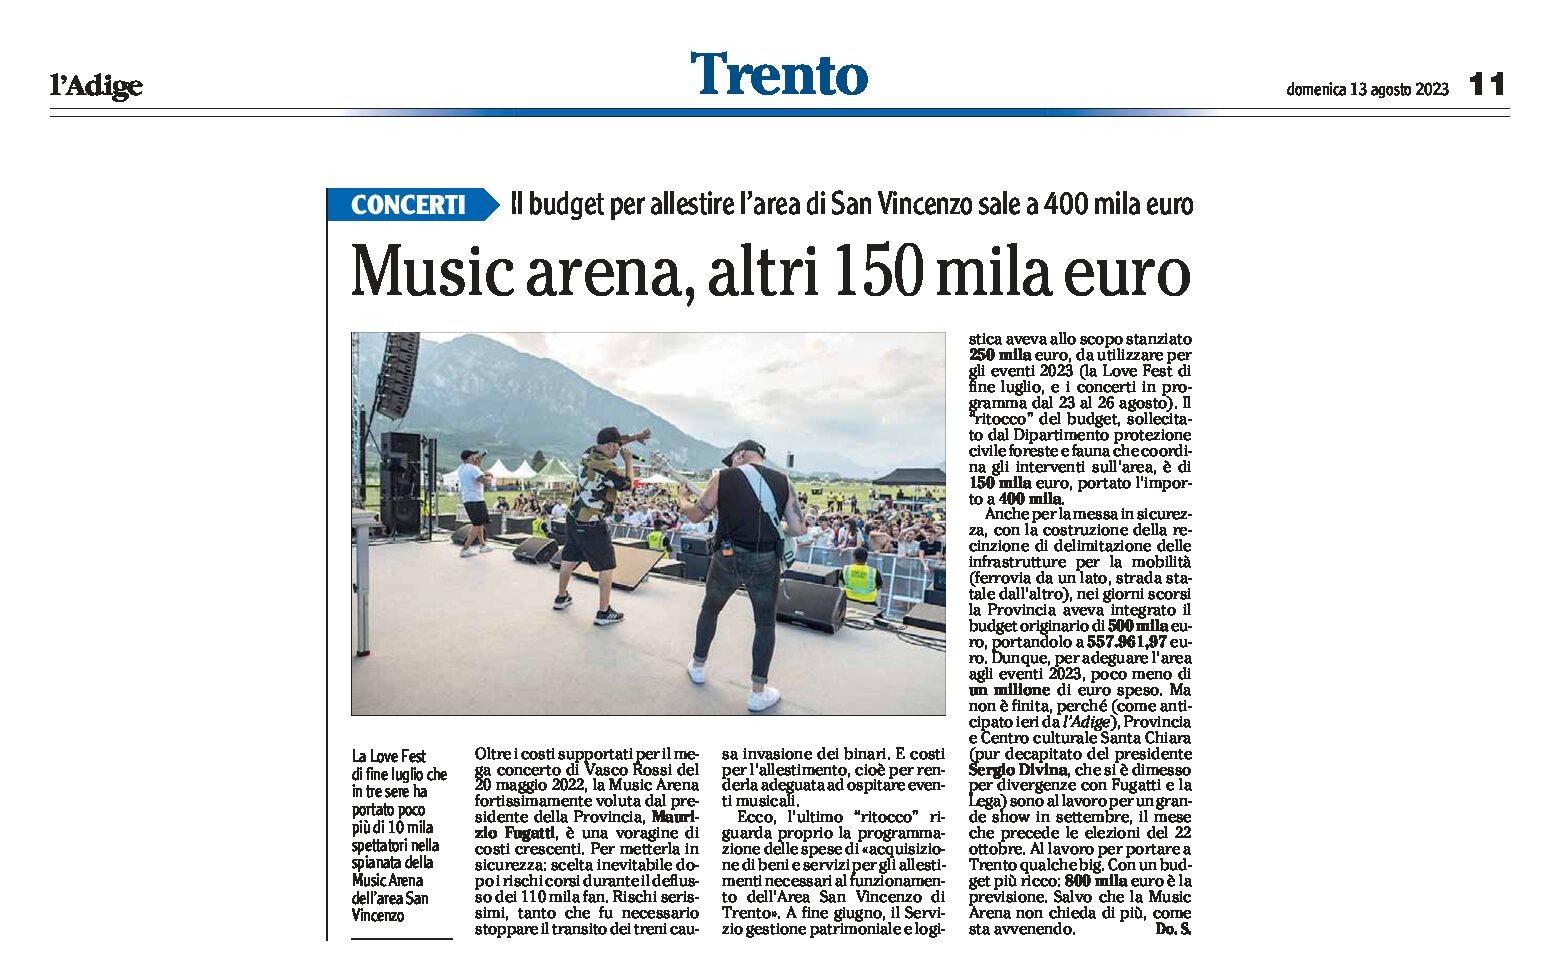 Trento, San Vincenzo: Music Arena, sale il budget per allestire l’area